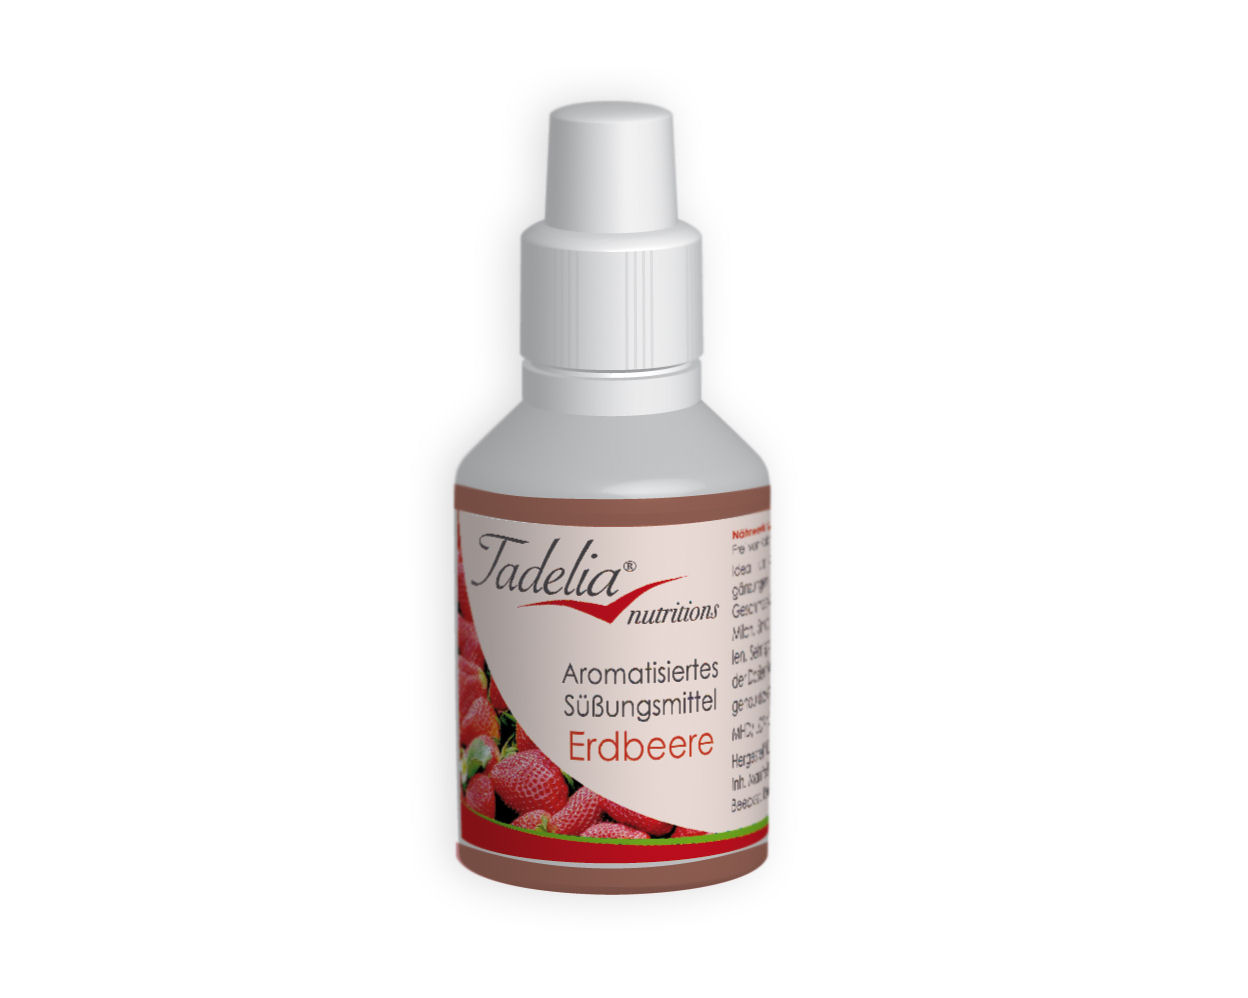 Tadelia® Aromatisiertes Süßungsmittel - Erdbeere 30 ml